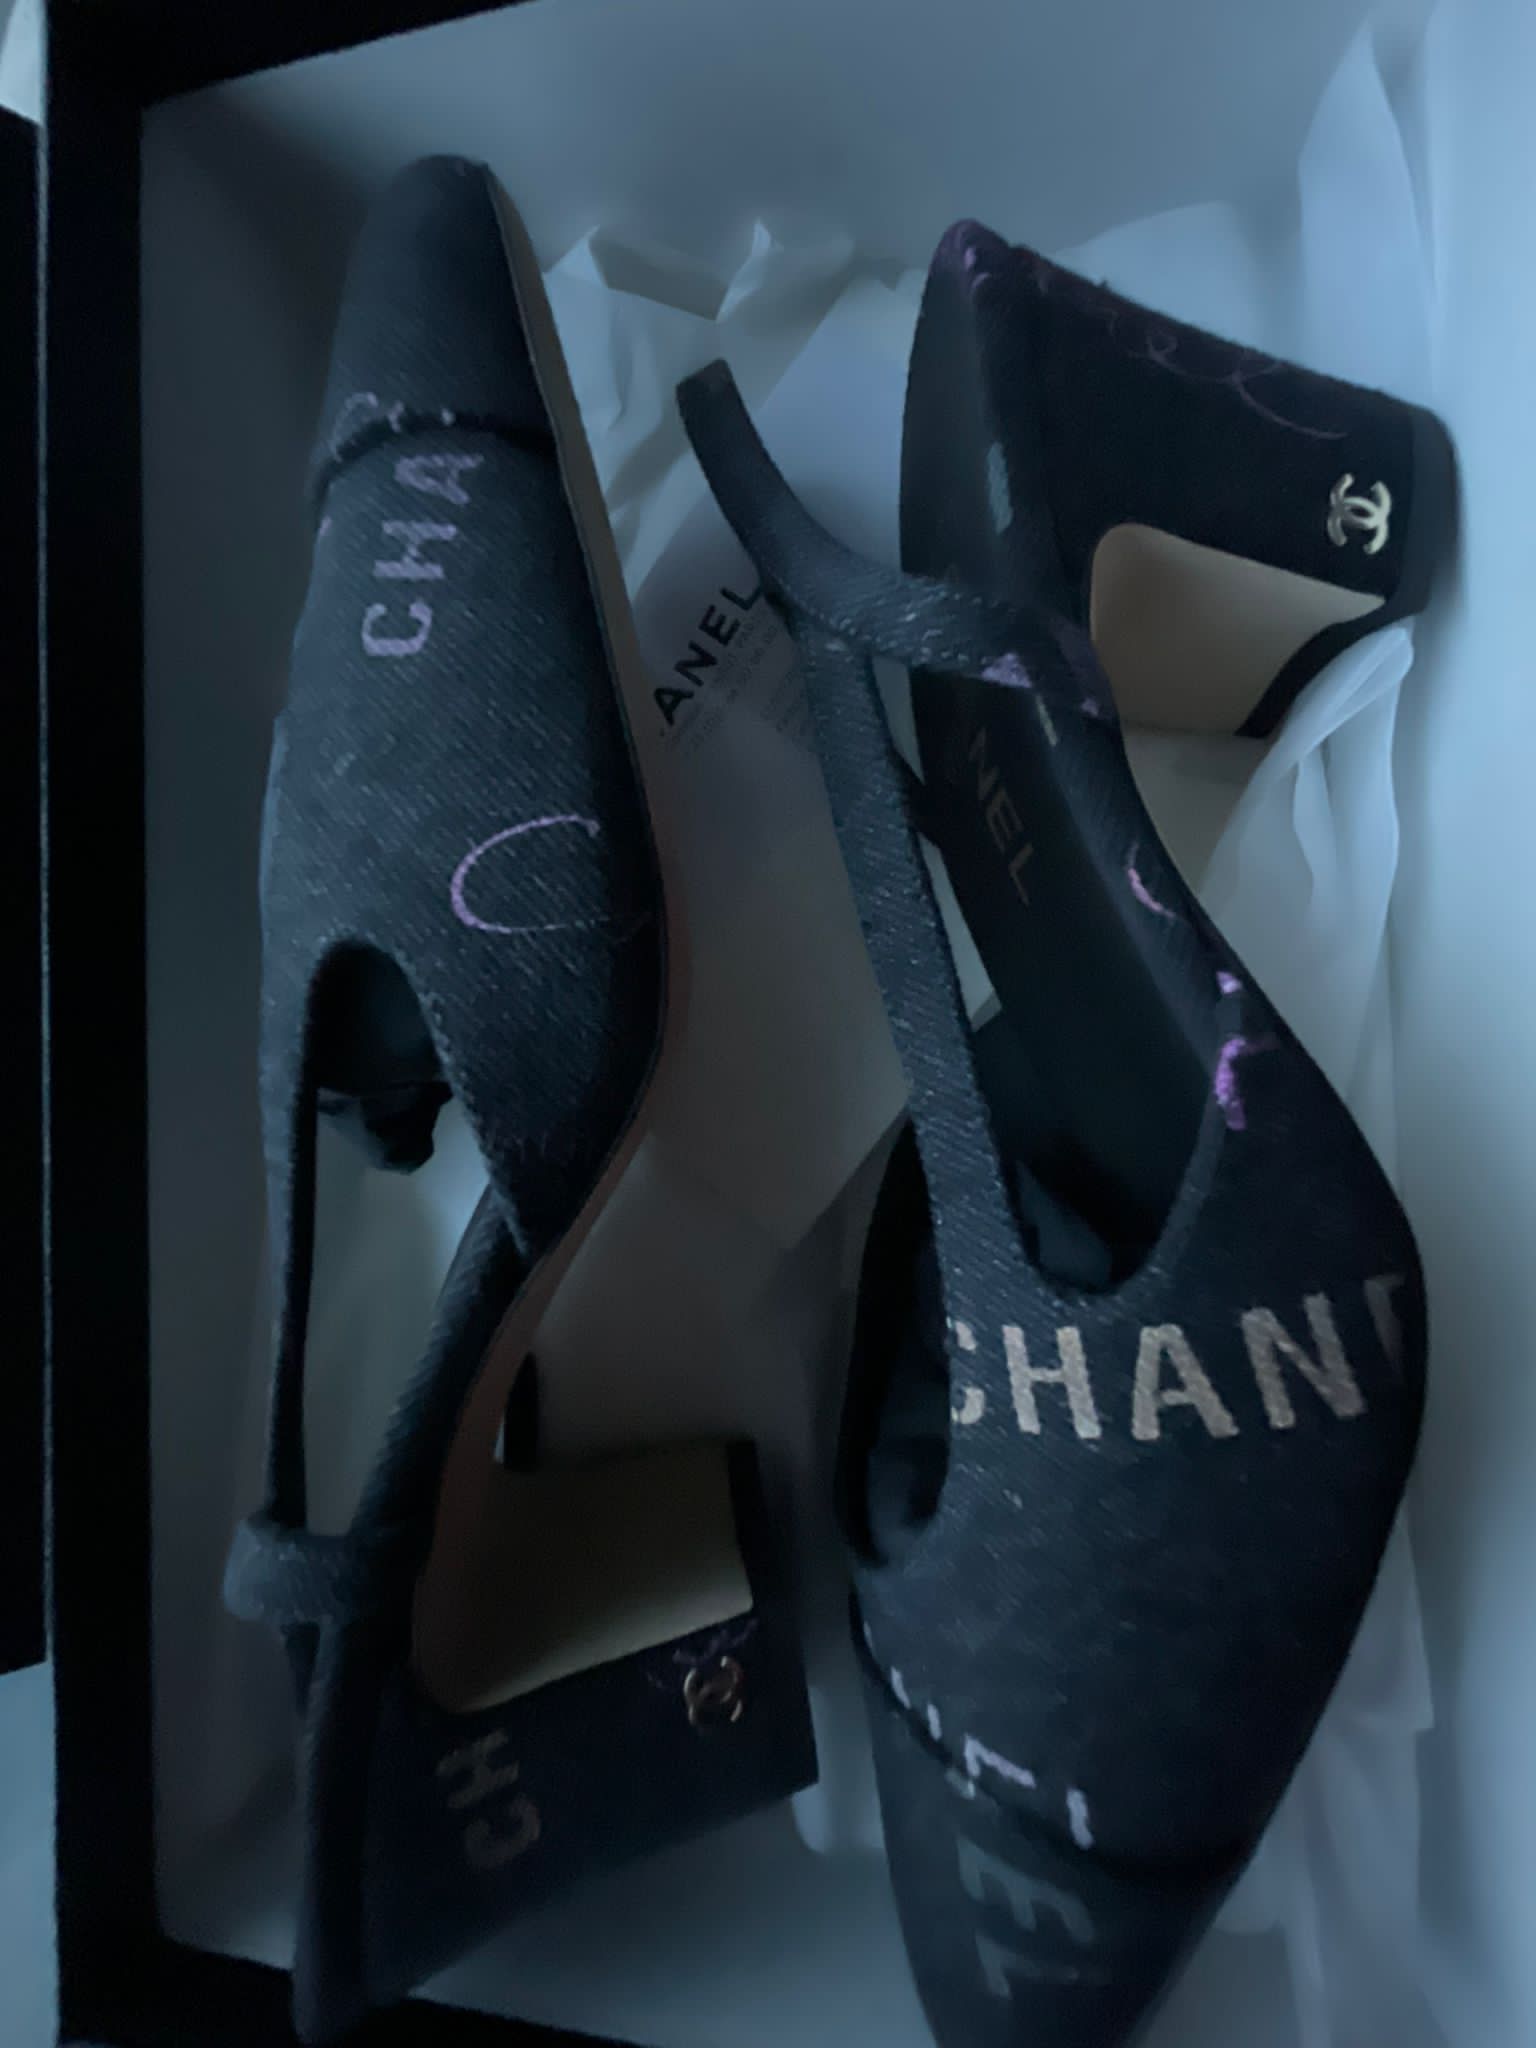 Honest Review of Chanel Slingbacks